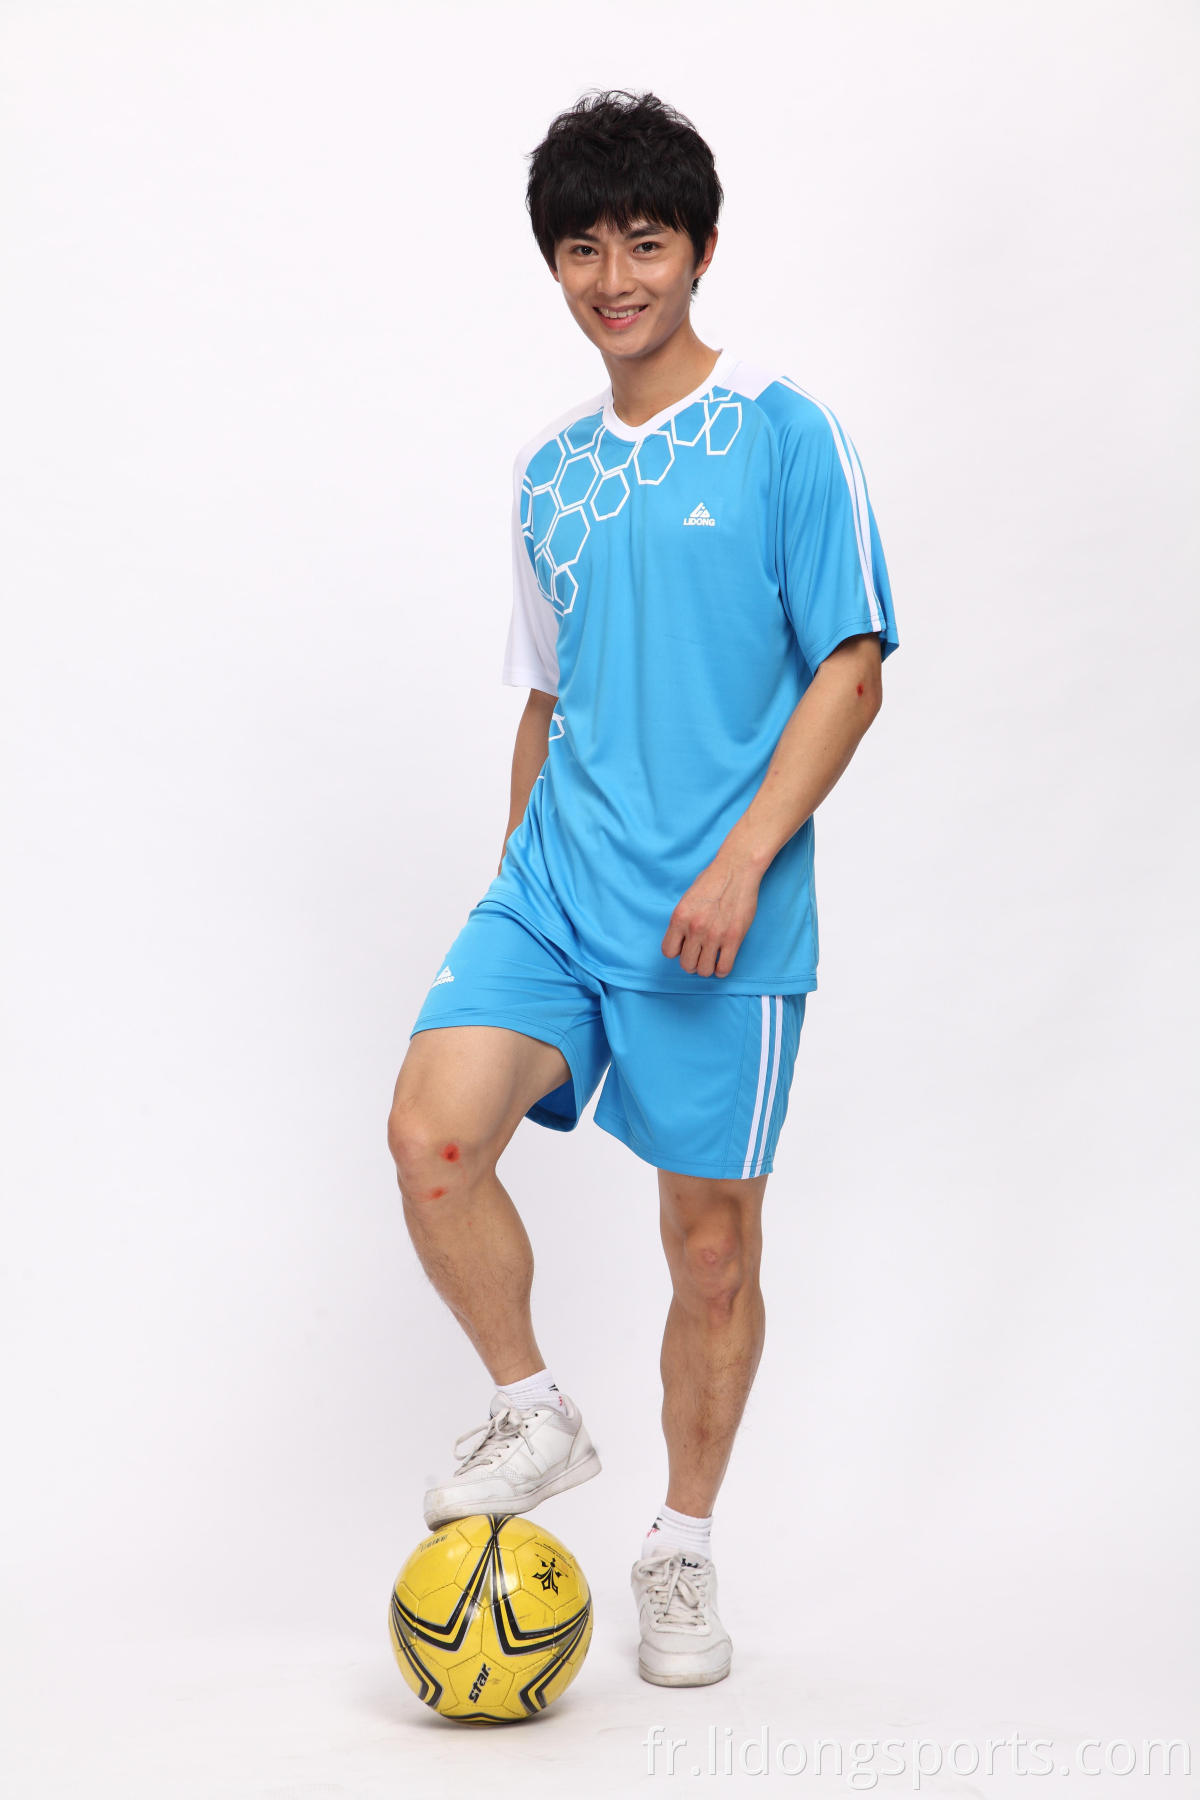 Uniformes de maillot de football personnalisé, Soccer en maillot chinois